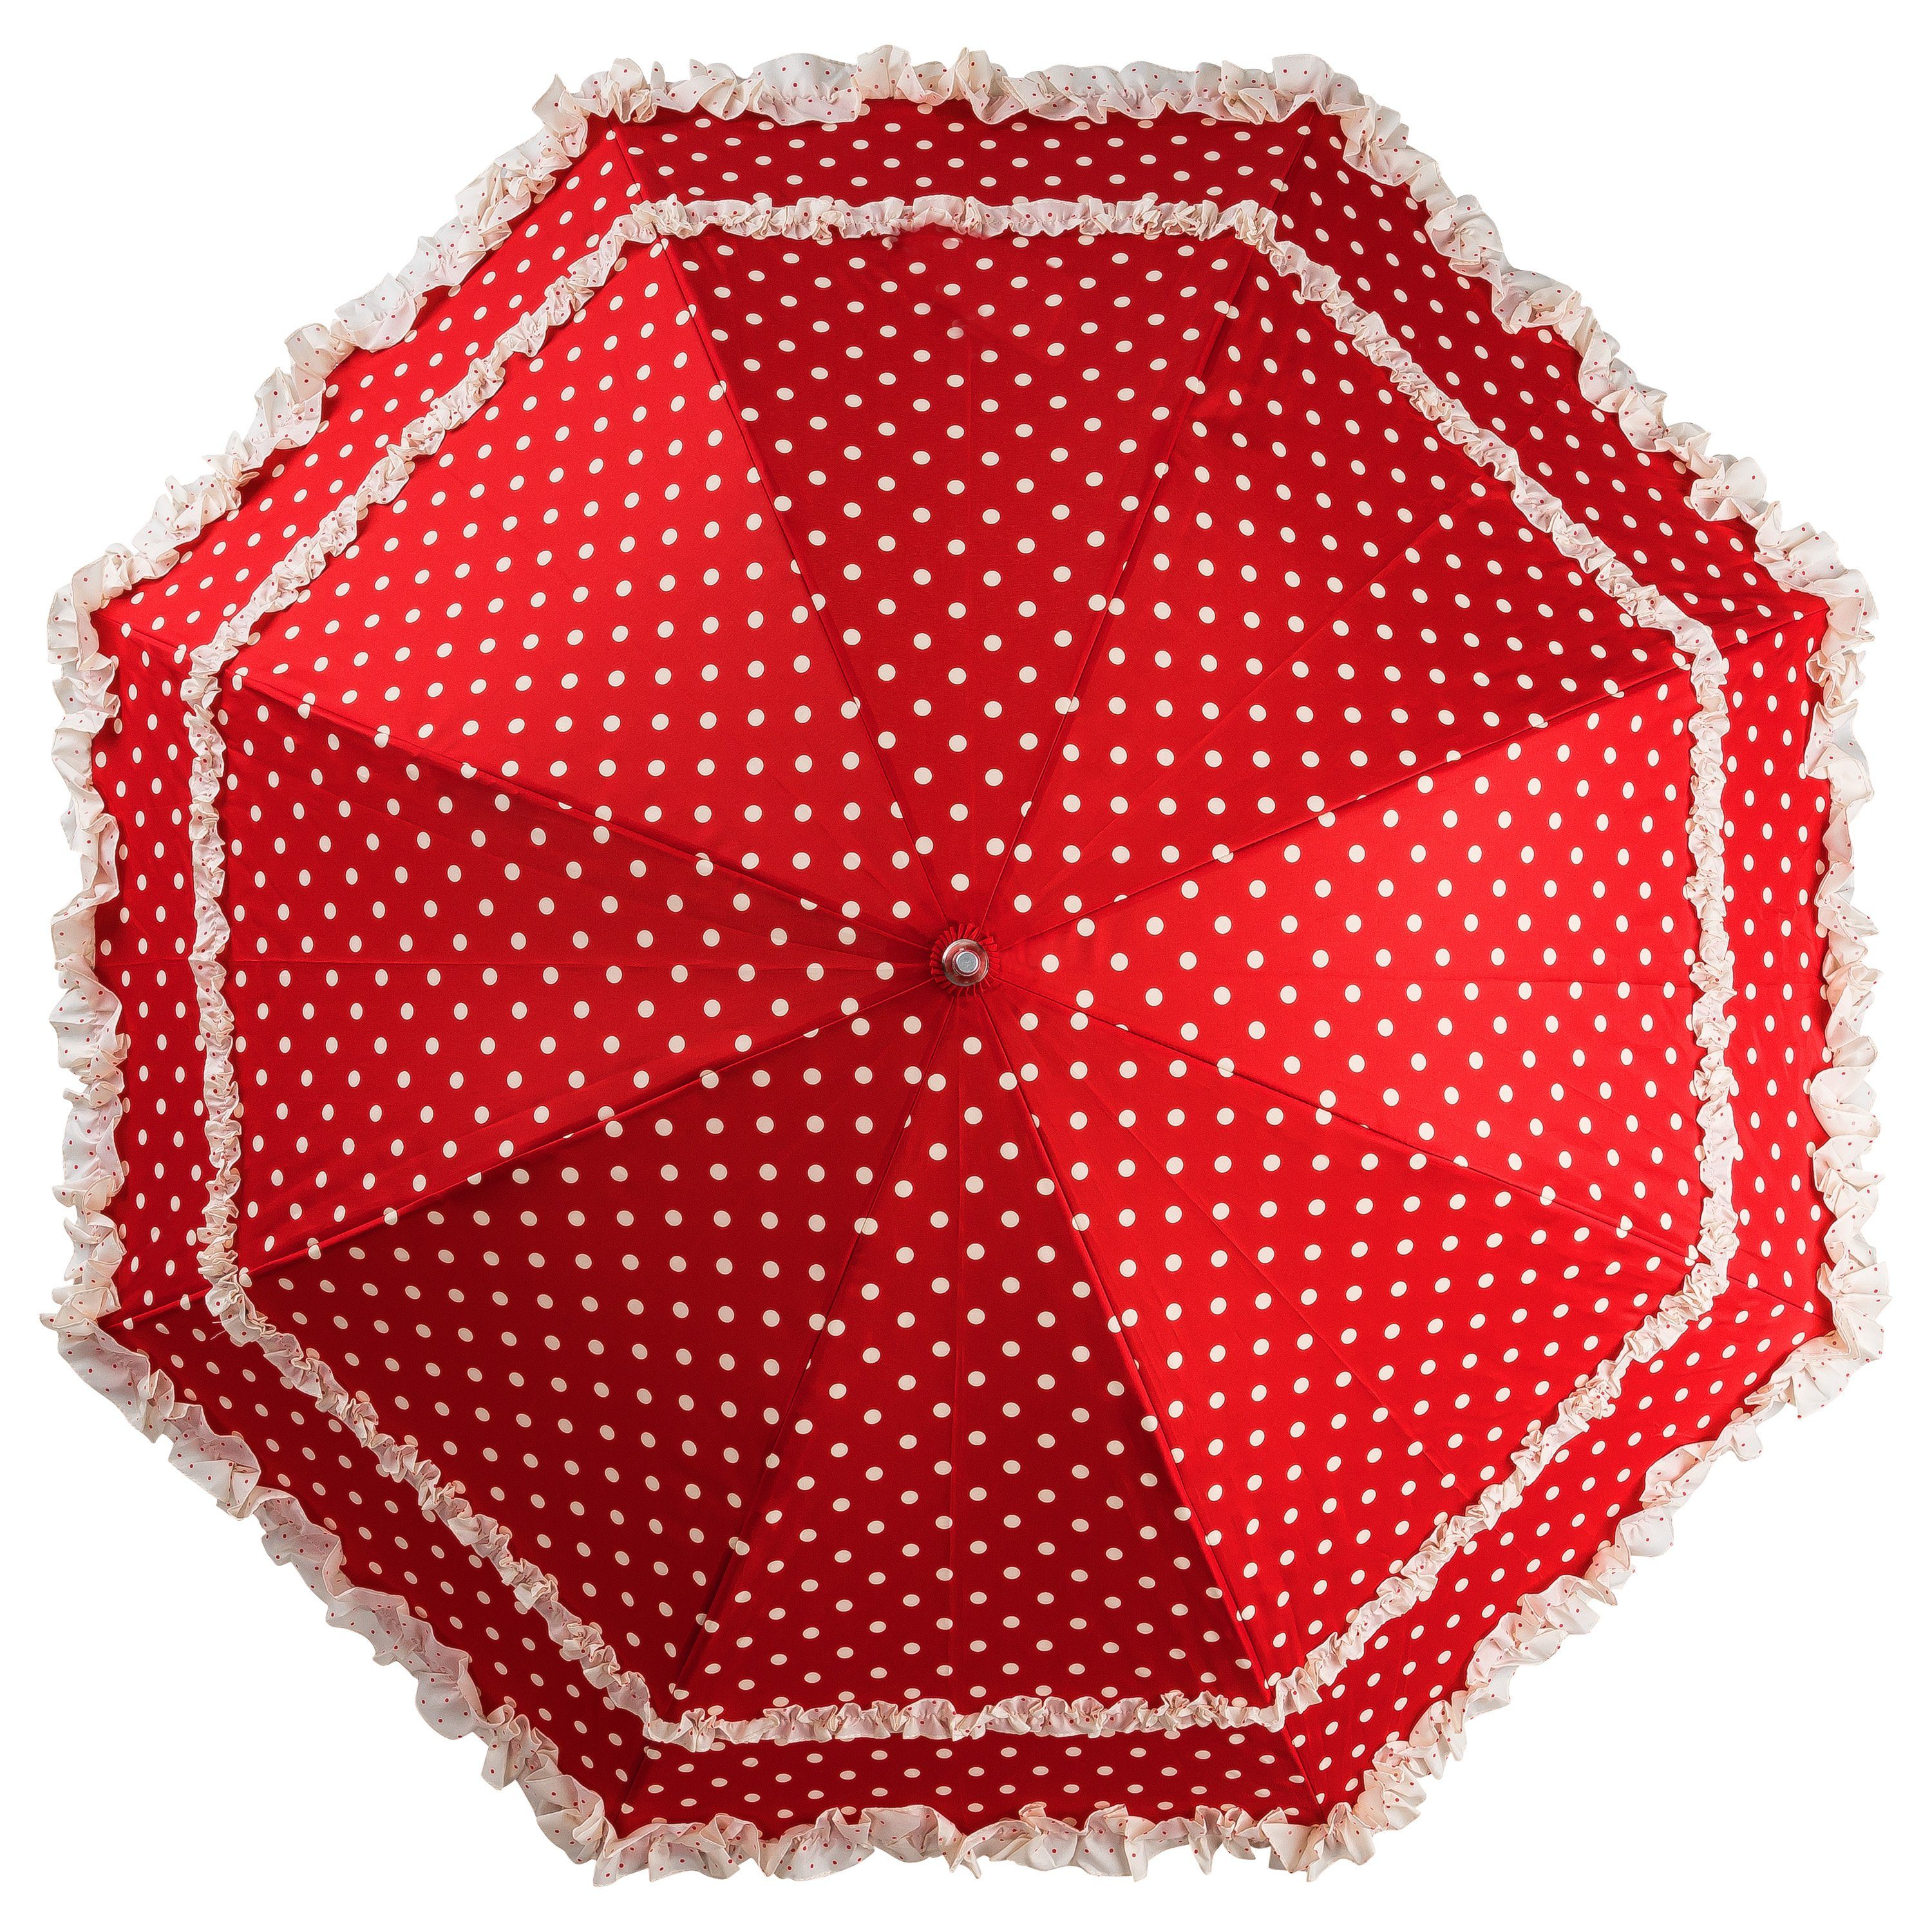 Sonnenschirm Rüschenkanten rot in Regenschirm von Stockregenschirm Mary, Lilienfeld mit Punkten zwei Hochzeitsschirm creme